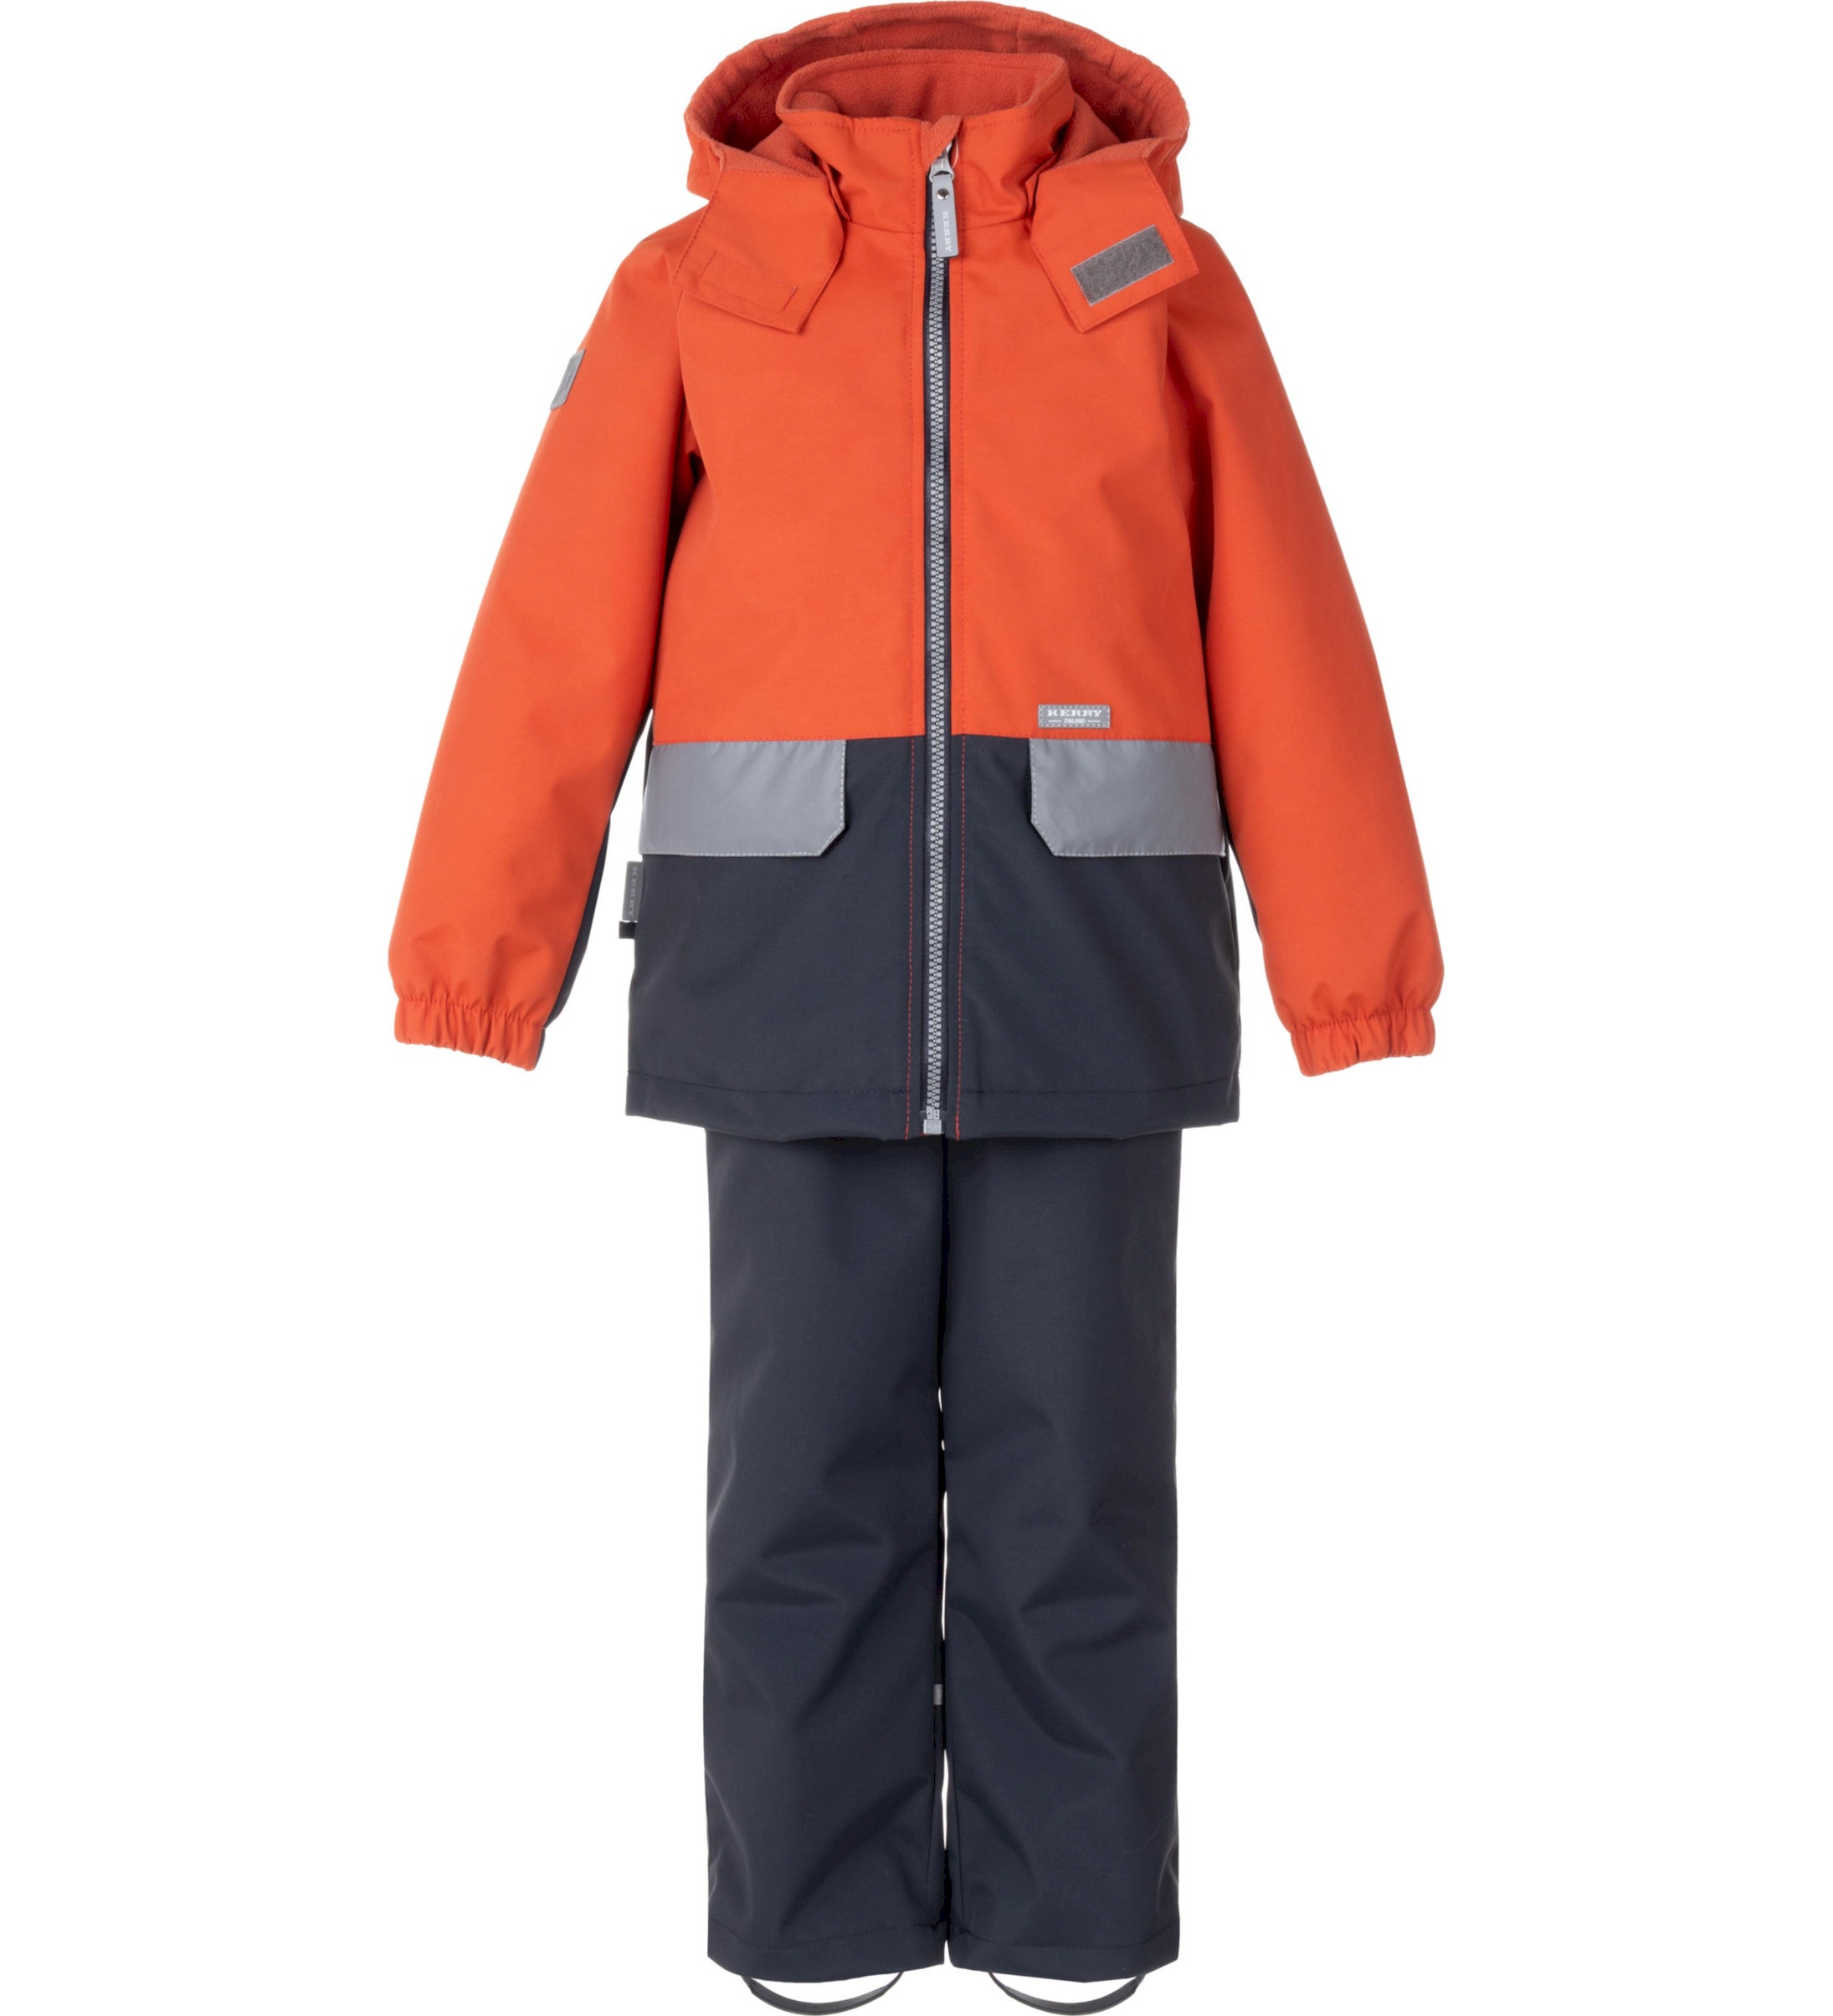 Комплект верхней одежды детский KERRY K24020, оранжевый; серый, 122 пылесос bort bac 500 22 900 вт сухая влажная уборка 22 л серый